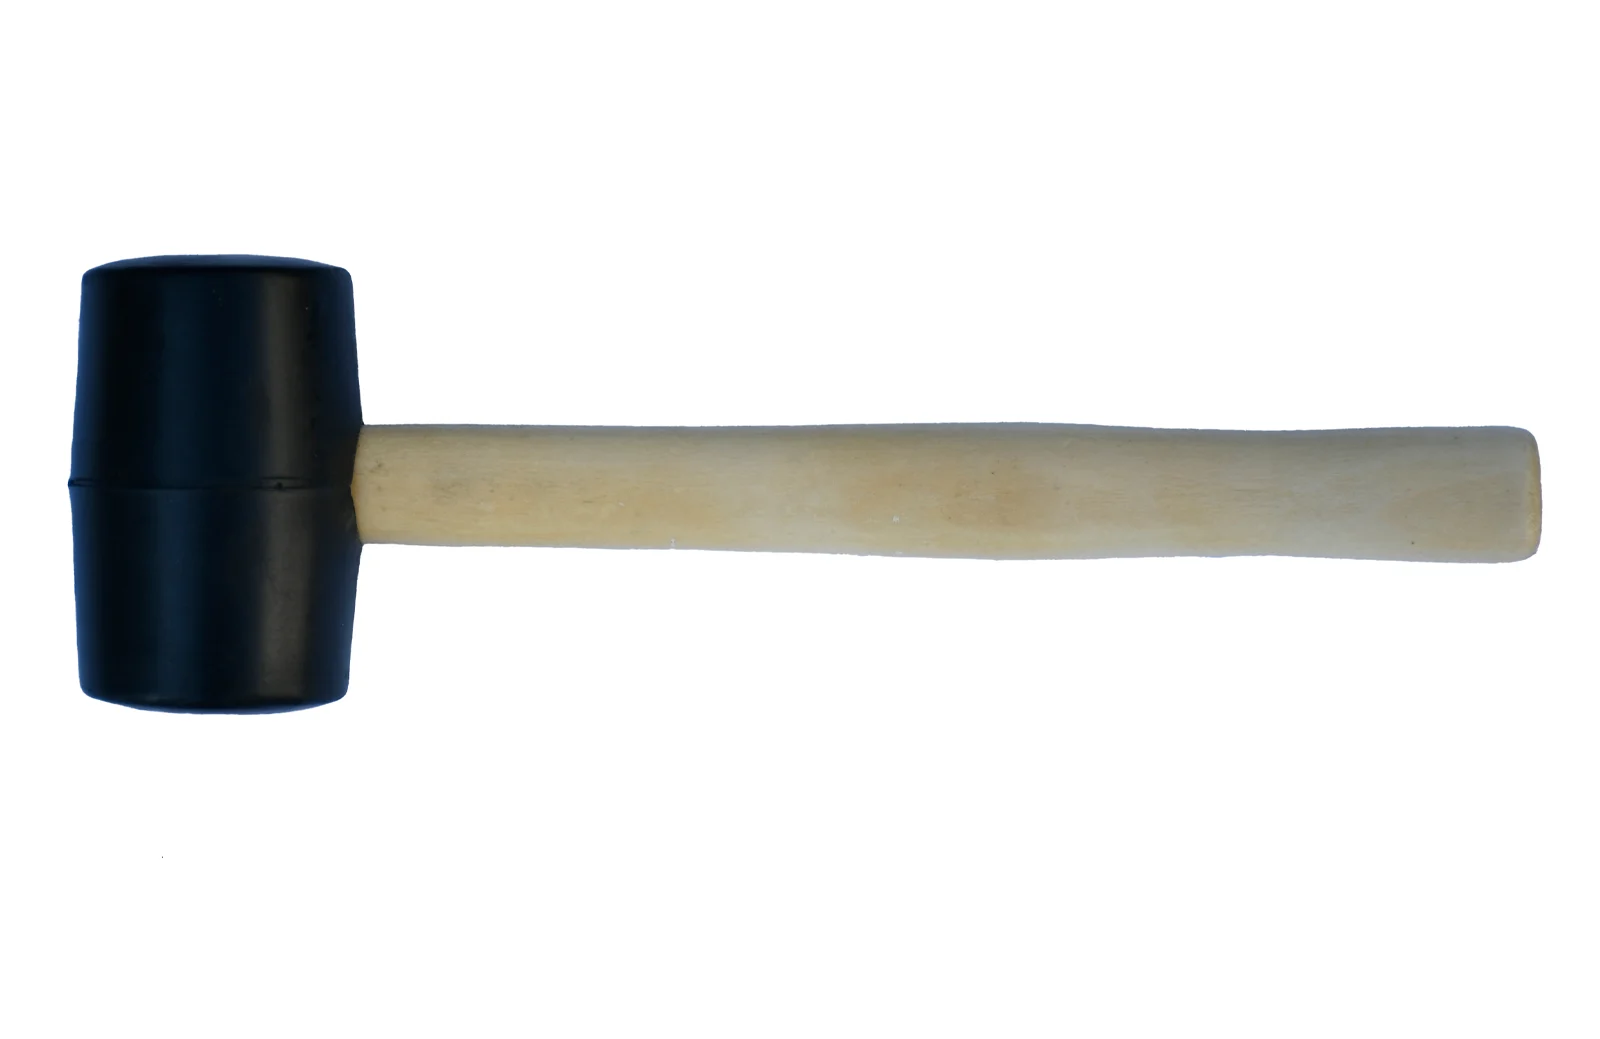 A mallet hammer